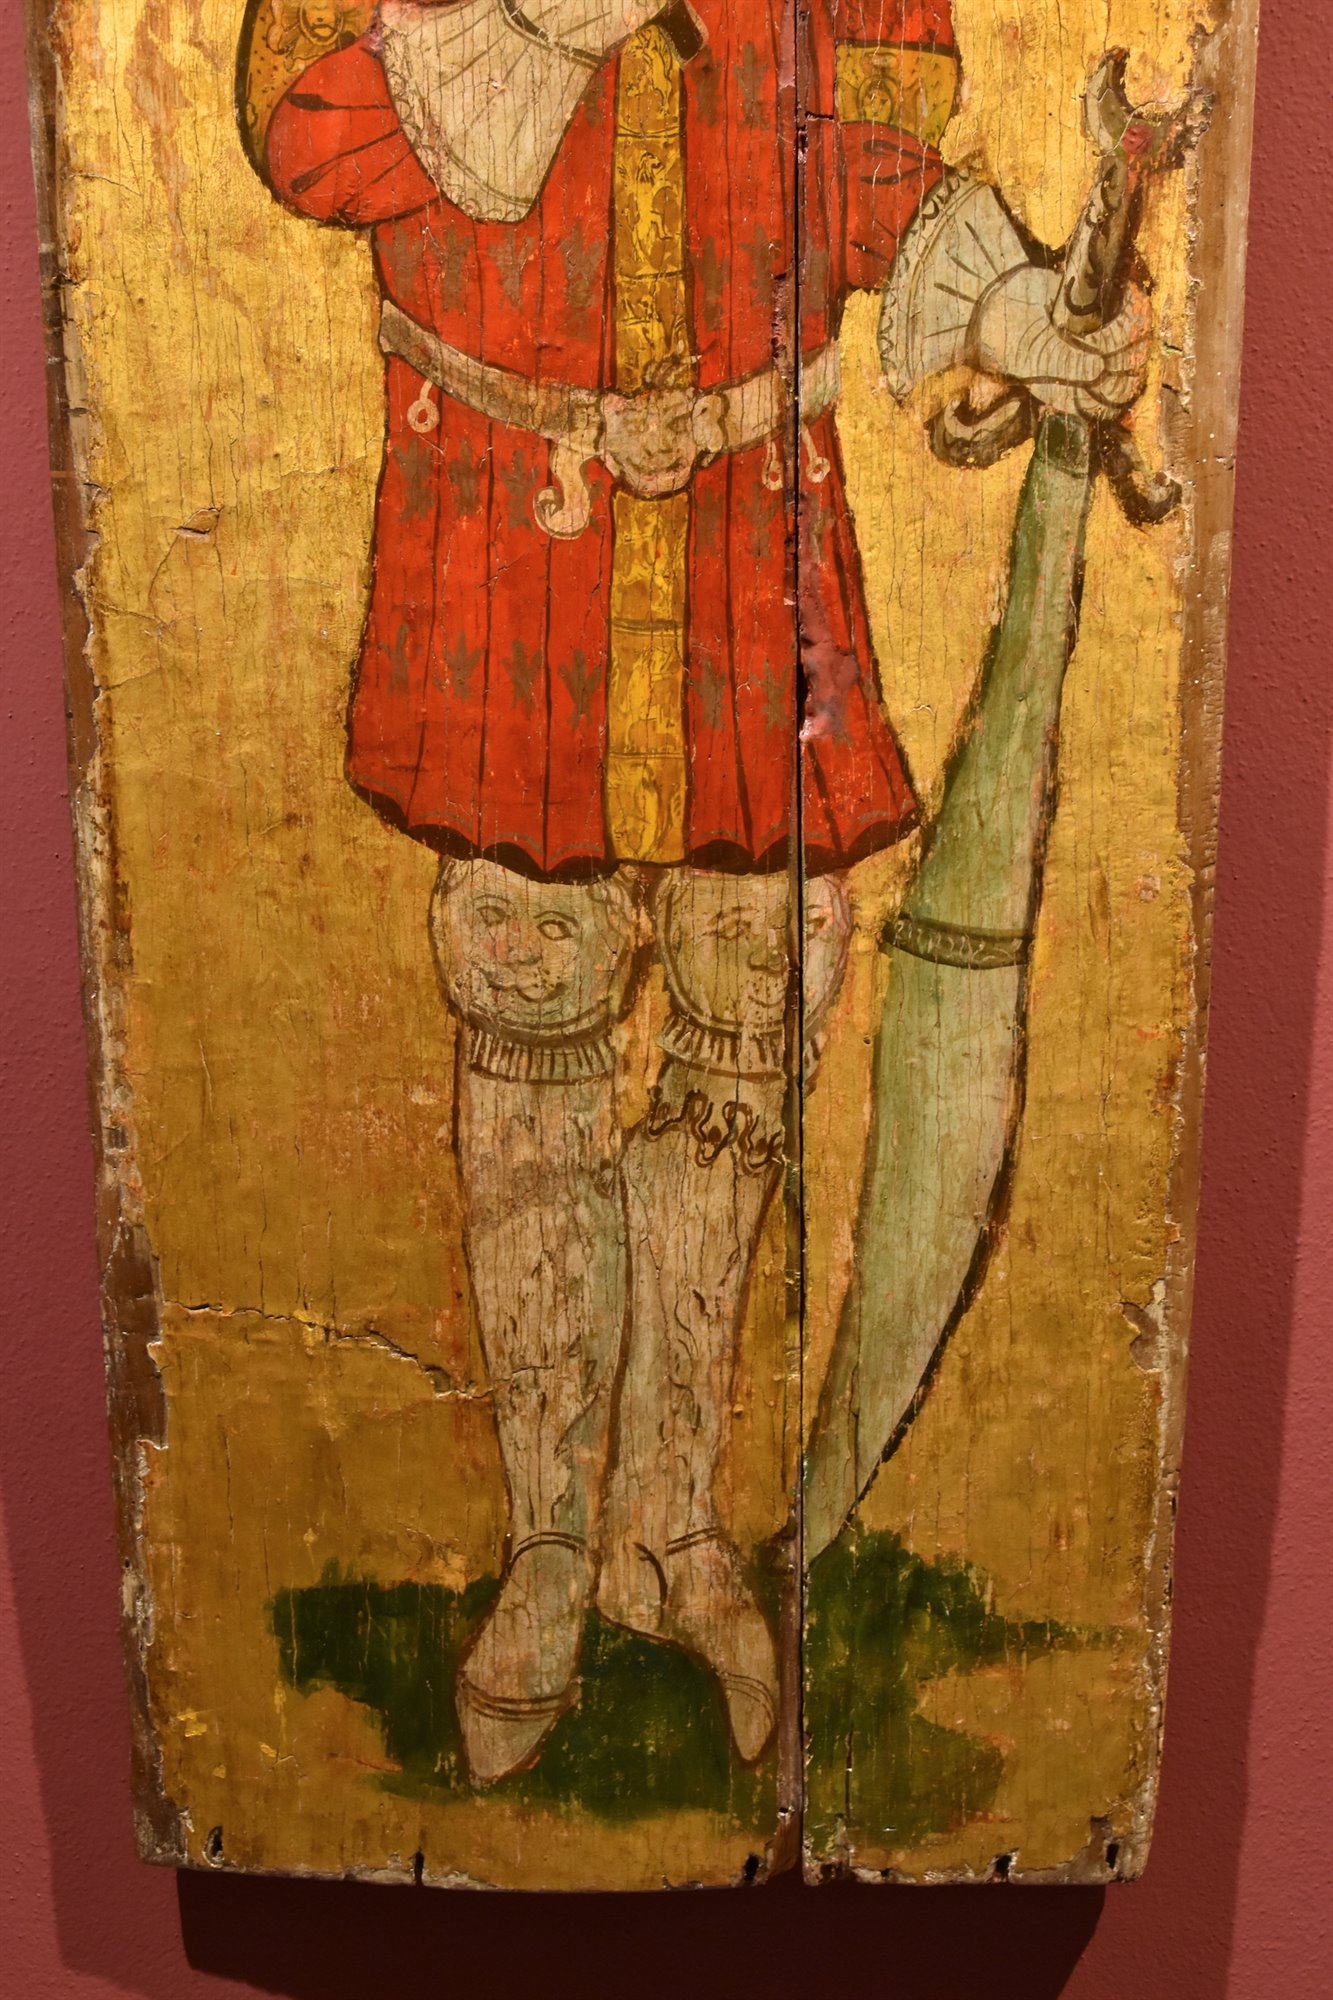 Manfredo IV di Saluzzo come Giuda Maccabeo/ Federico I di Saluzzo come Re Davide